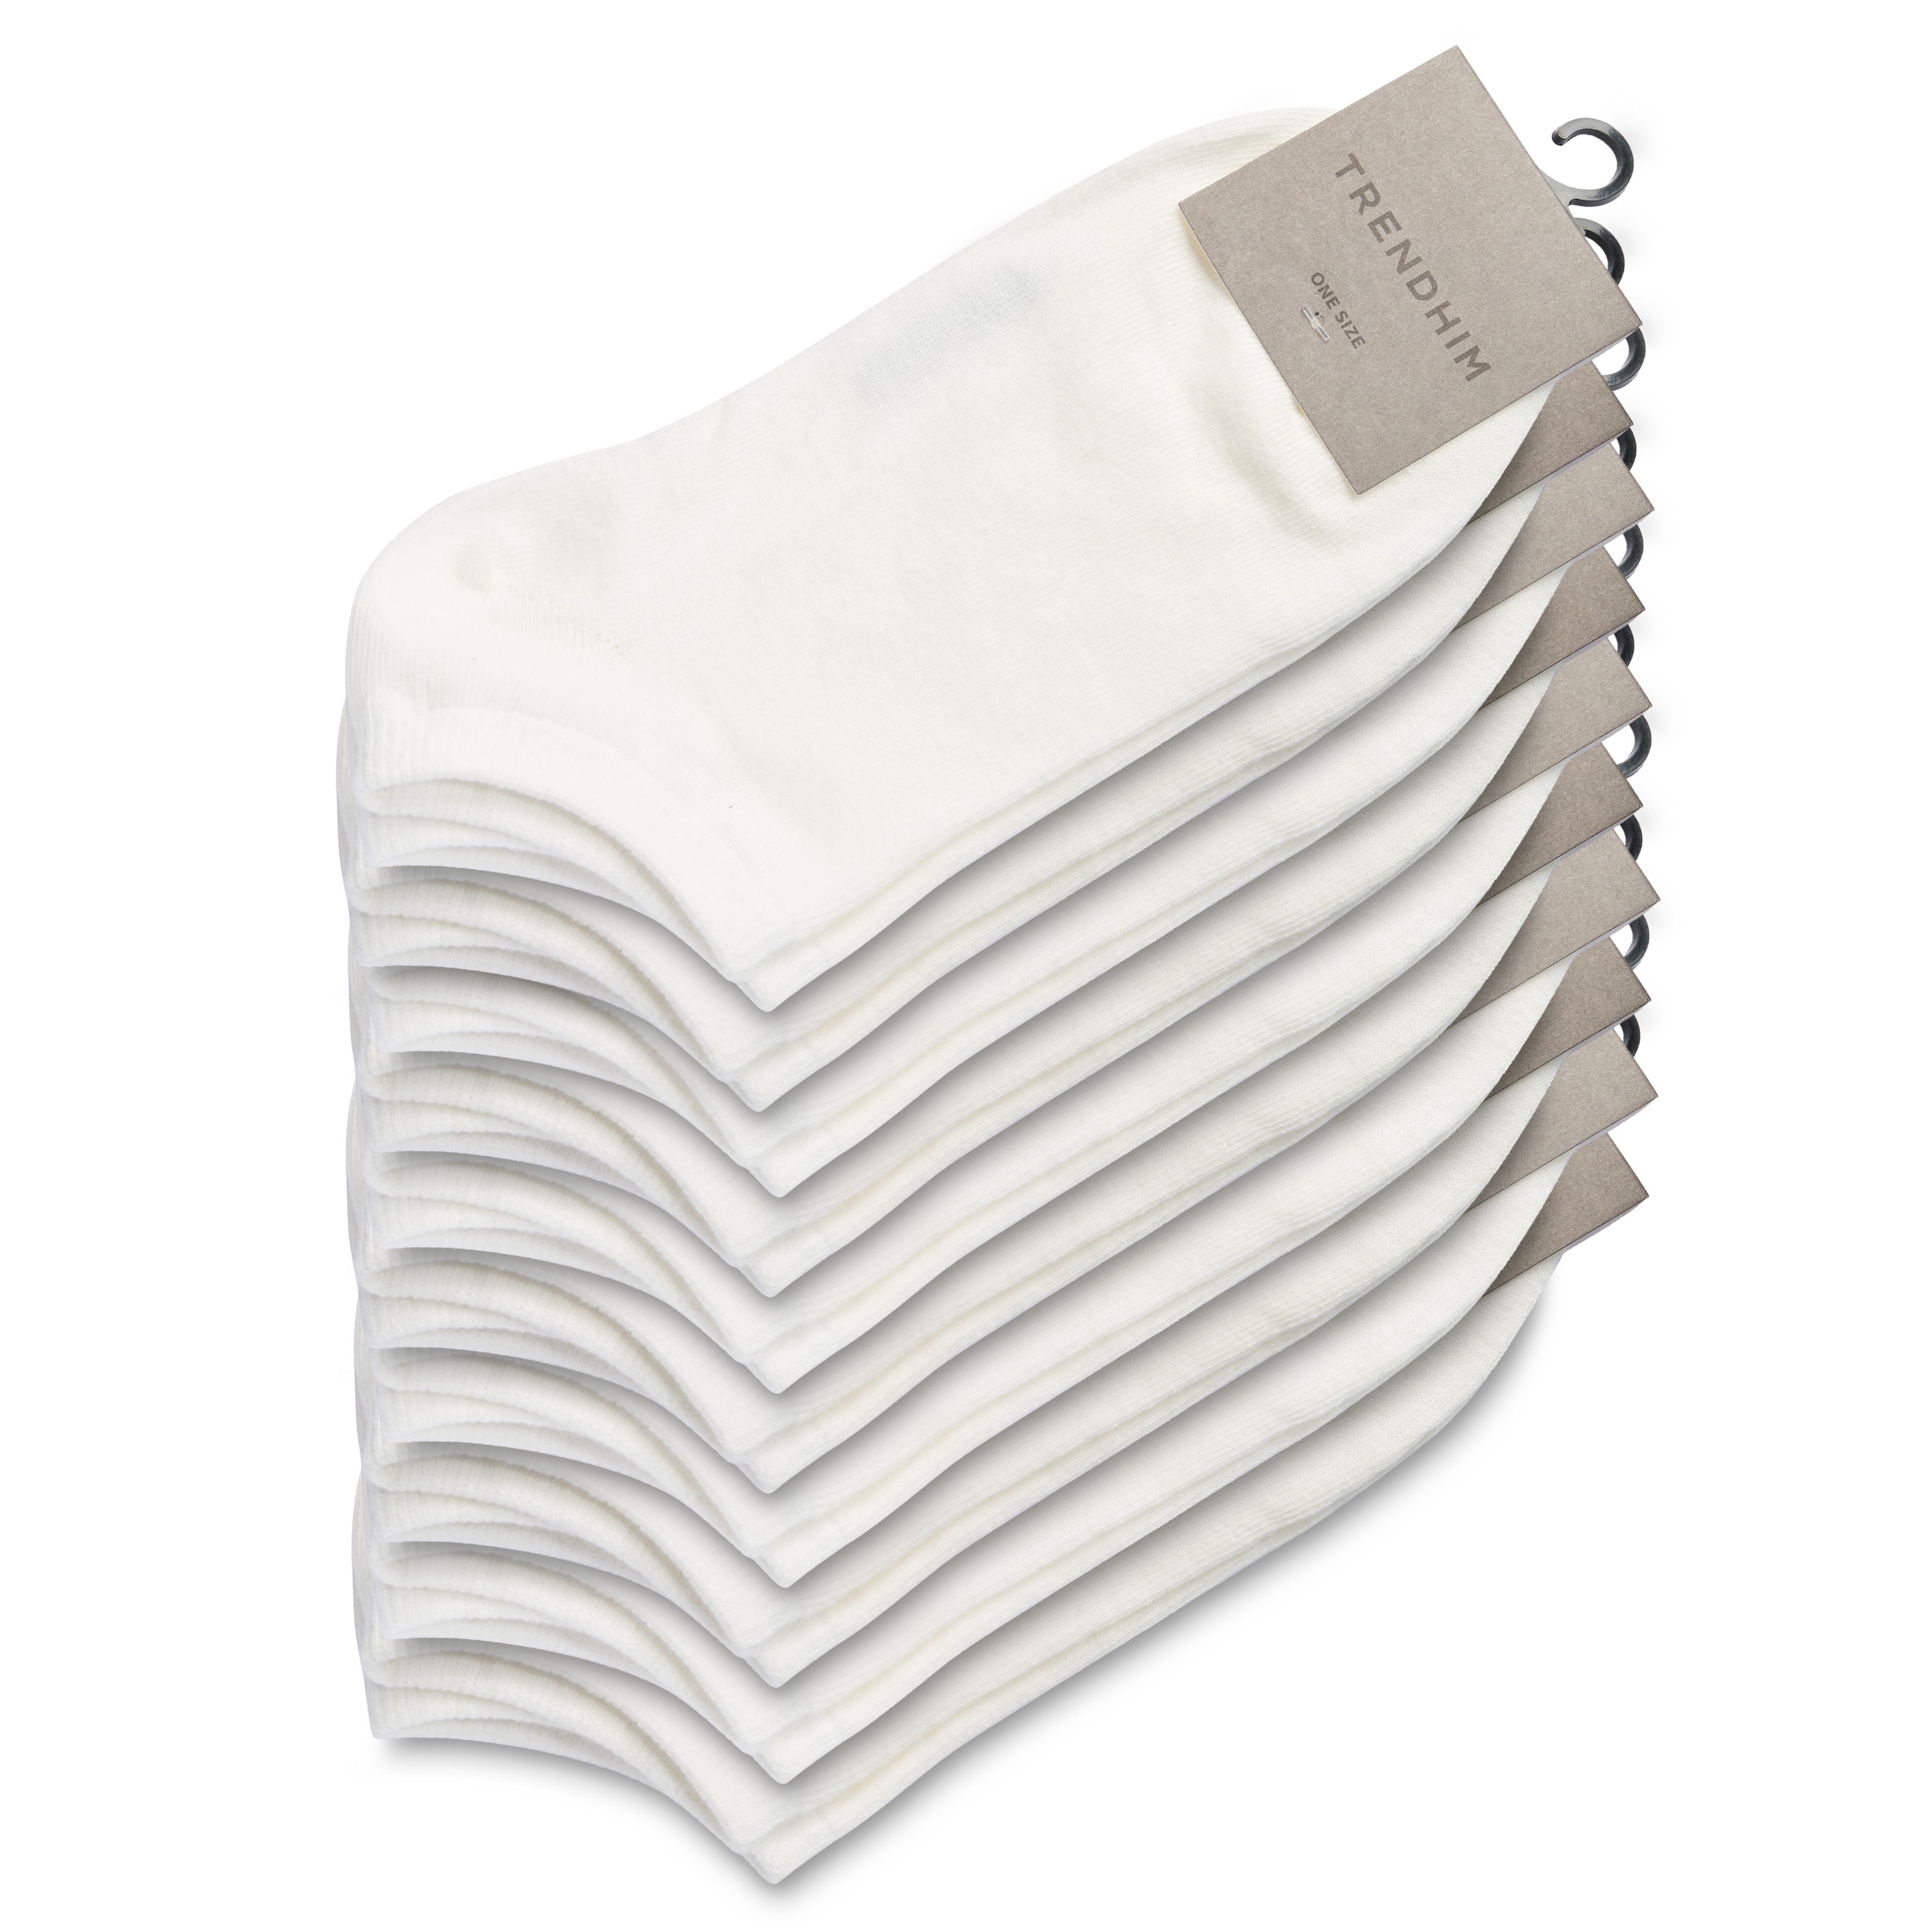 Sokkenbundel | Bundel met 10 Paar Witte Enkelsokken